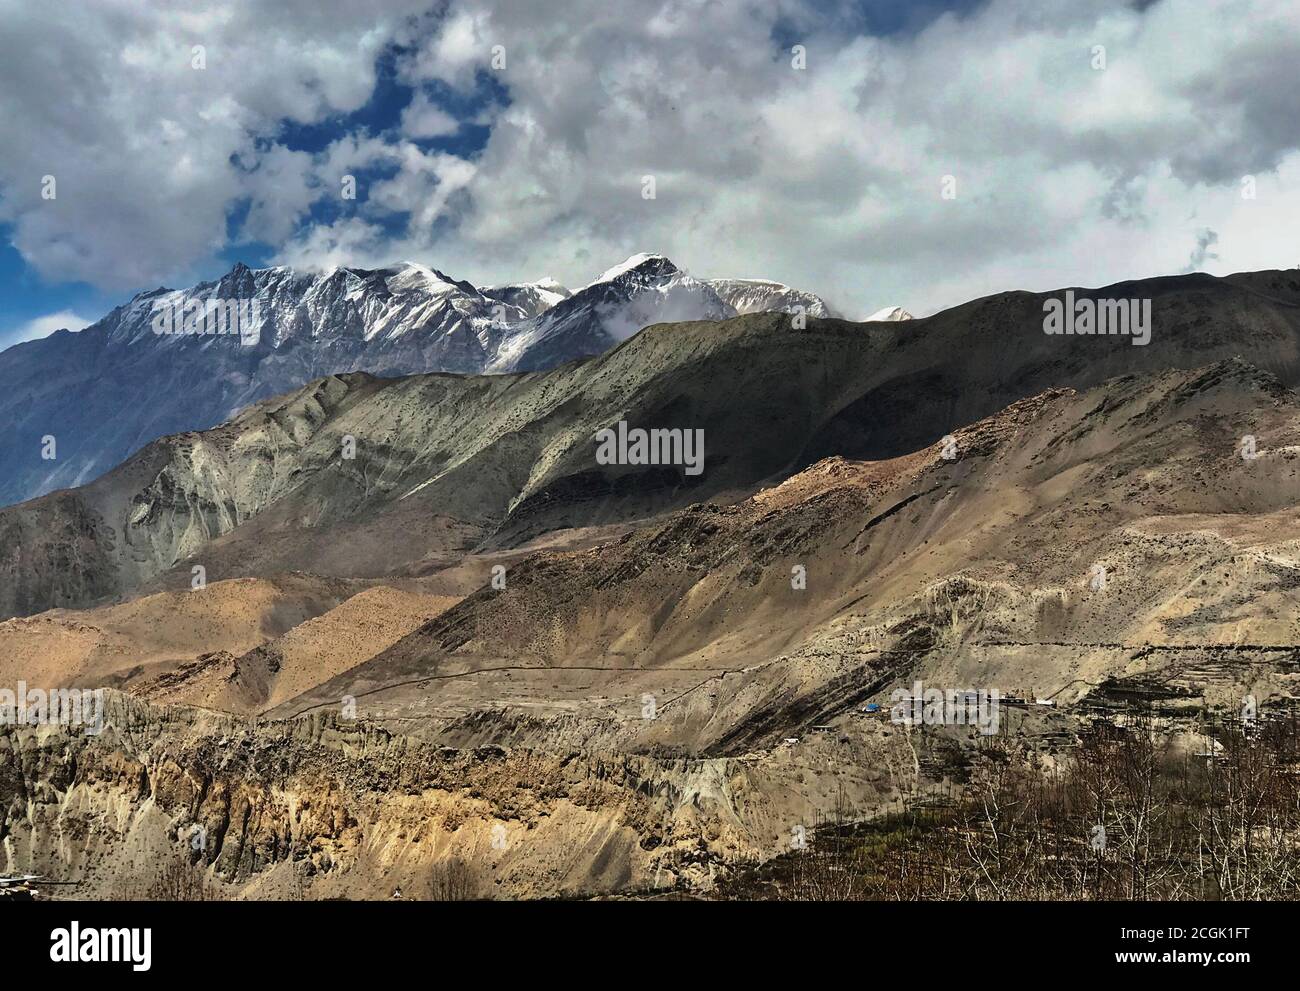 Montagne dell'Himalaya nel distretto di Mustang, Nepal, Asia. Incredibile paesaggio dell'Himalaya. Catena montuosa della neve. Annapurna circuit.Awesome natura selvaggia Foto Stock